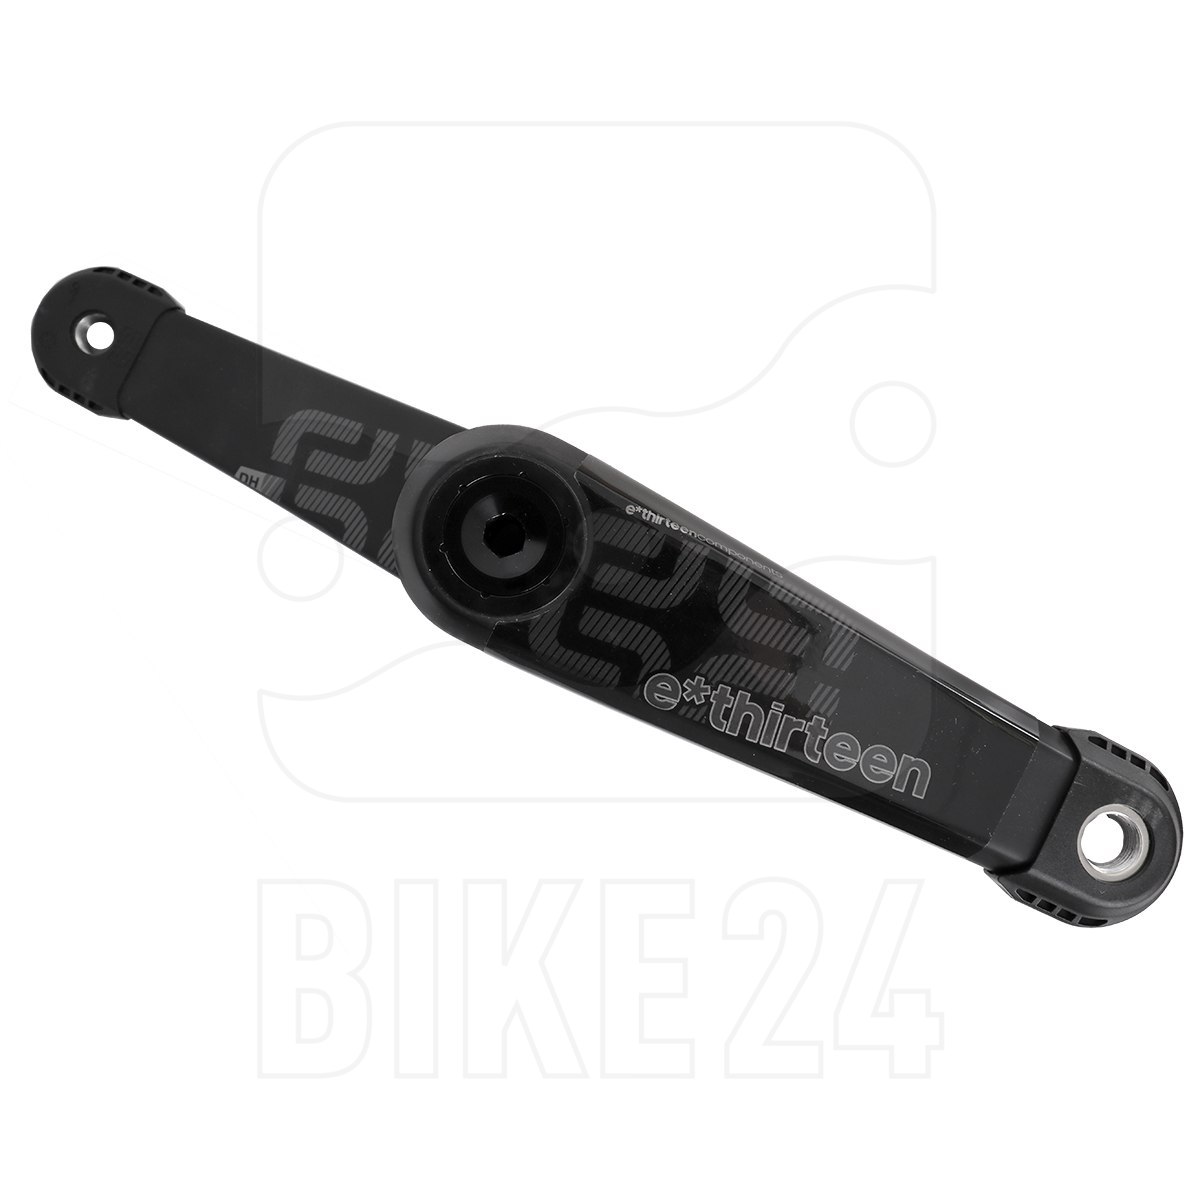 Picture of e*thirteen LG1 DH Race Carbon Cranks - 83mm - black